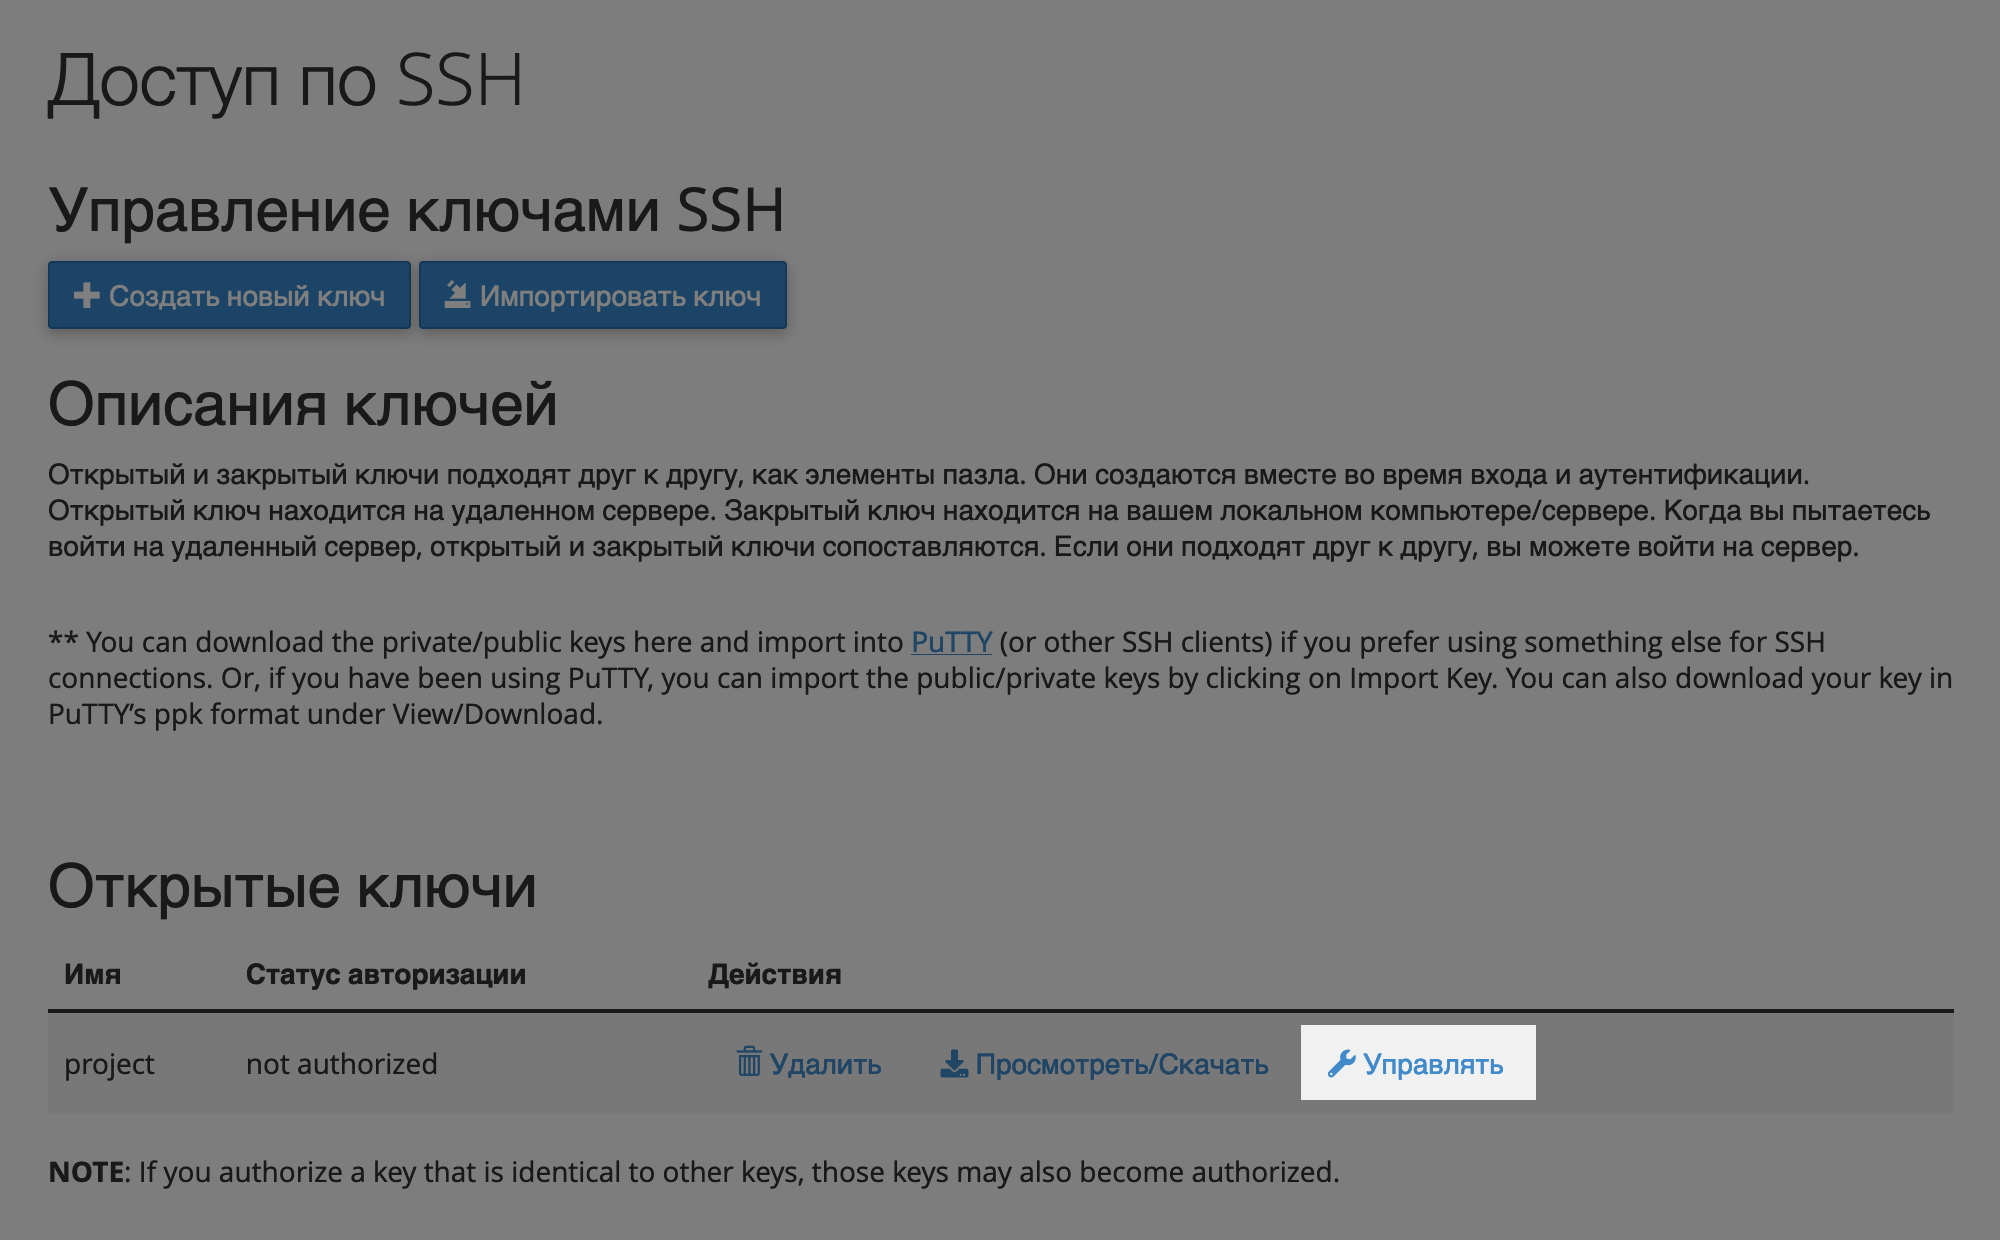 Кнопка «Управлять» в приложении «Доступ по SSH» в cPanel